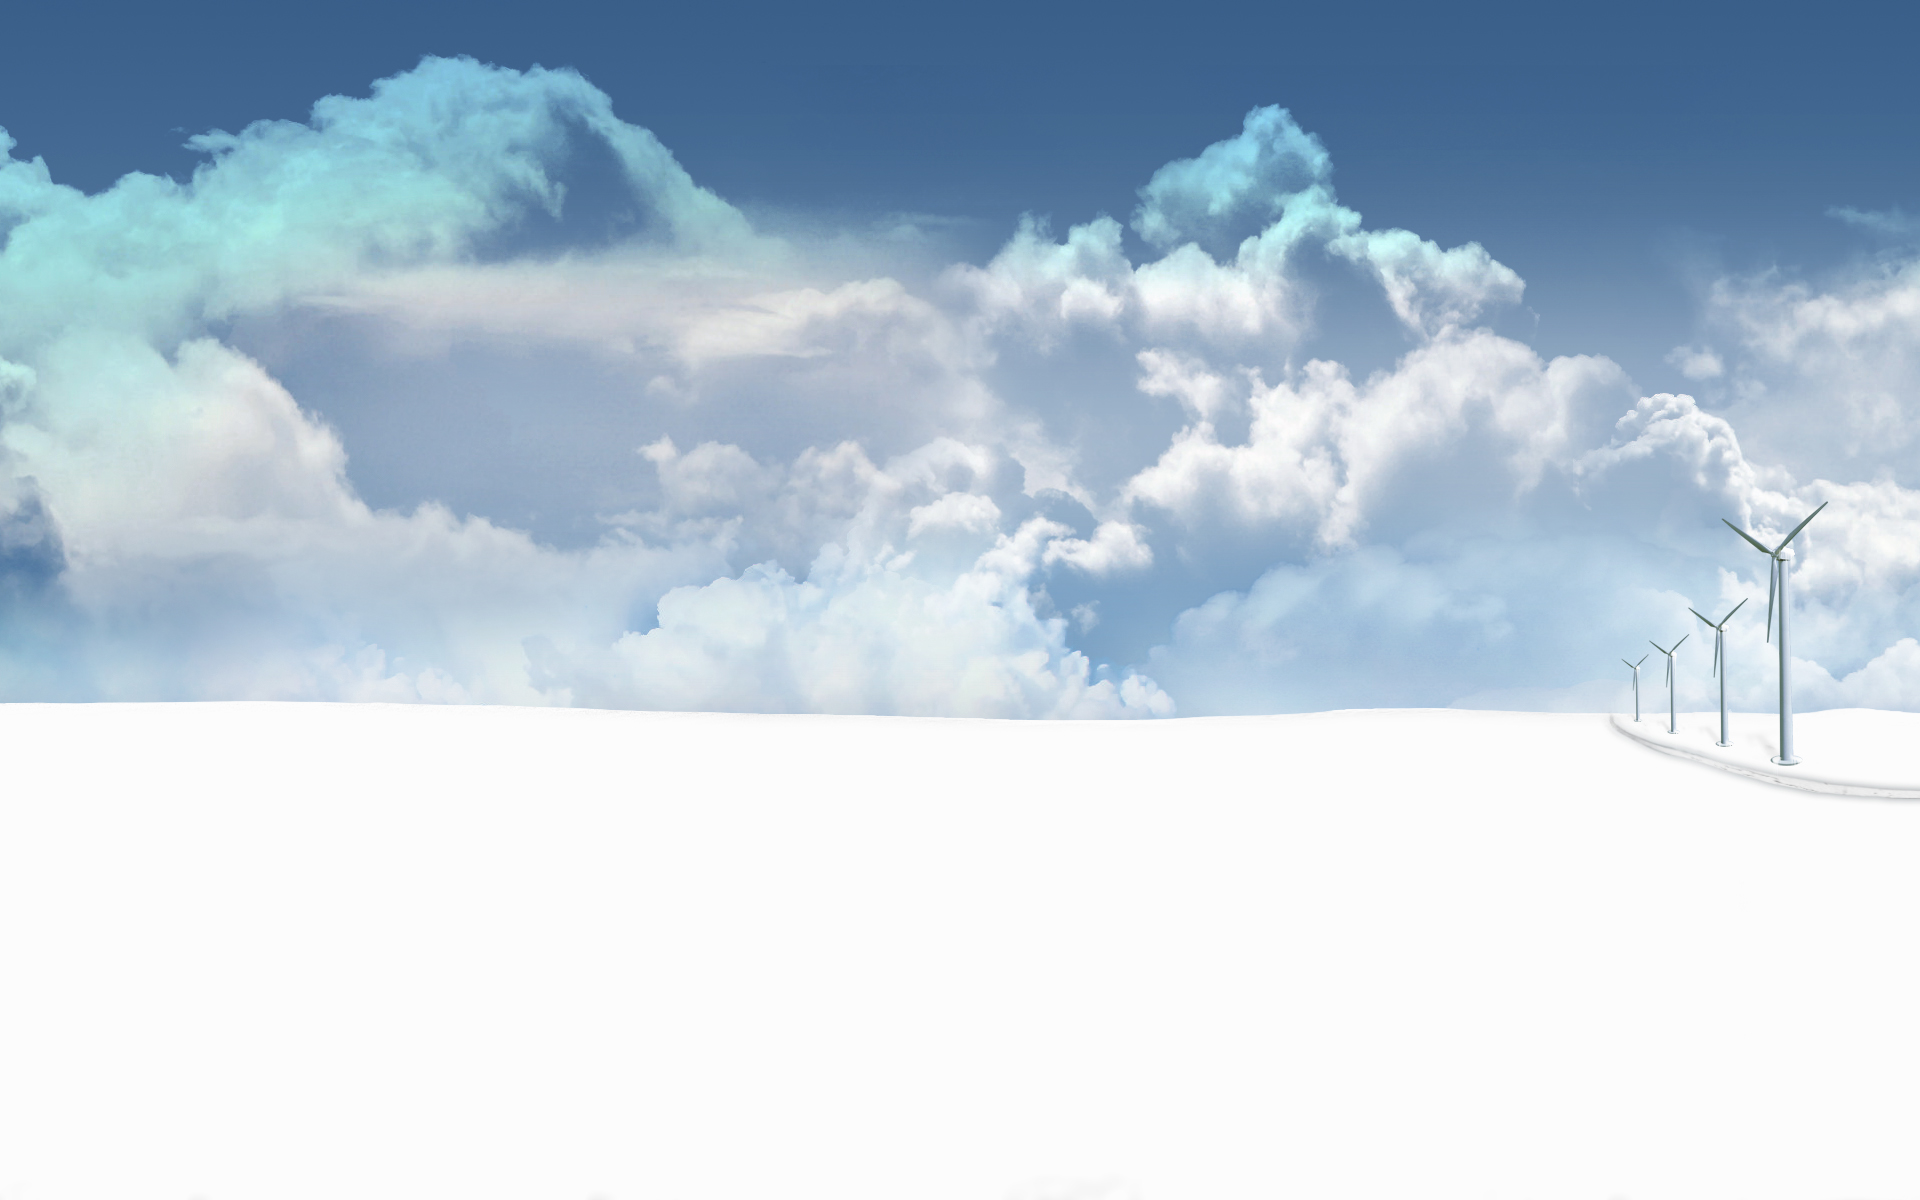 Скачать обои бесплатно Зима, Облака, Земля/природа картинка на рабочий стол ПК